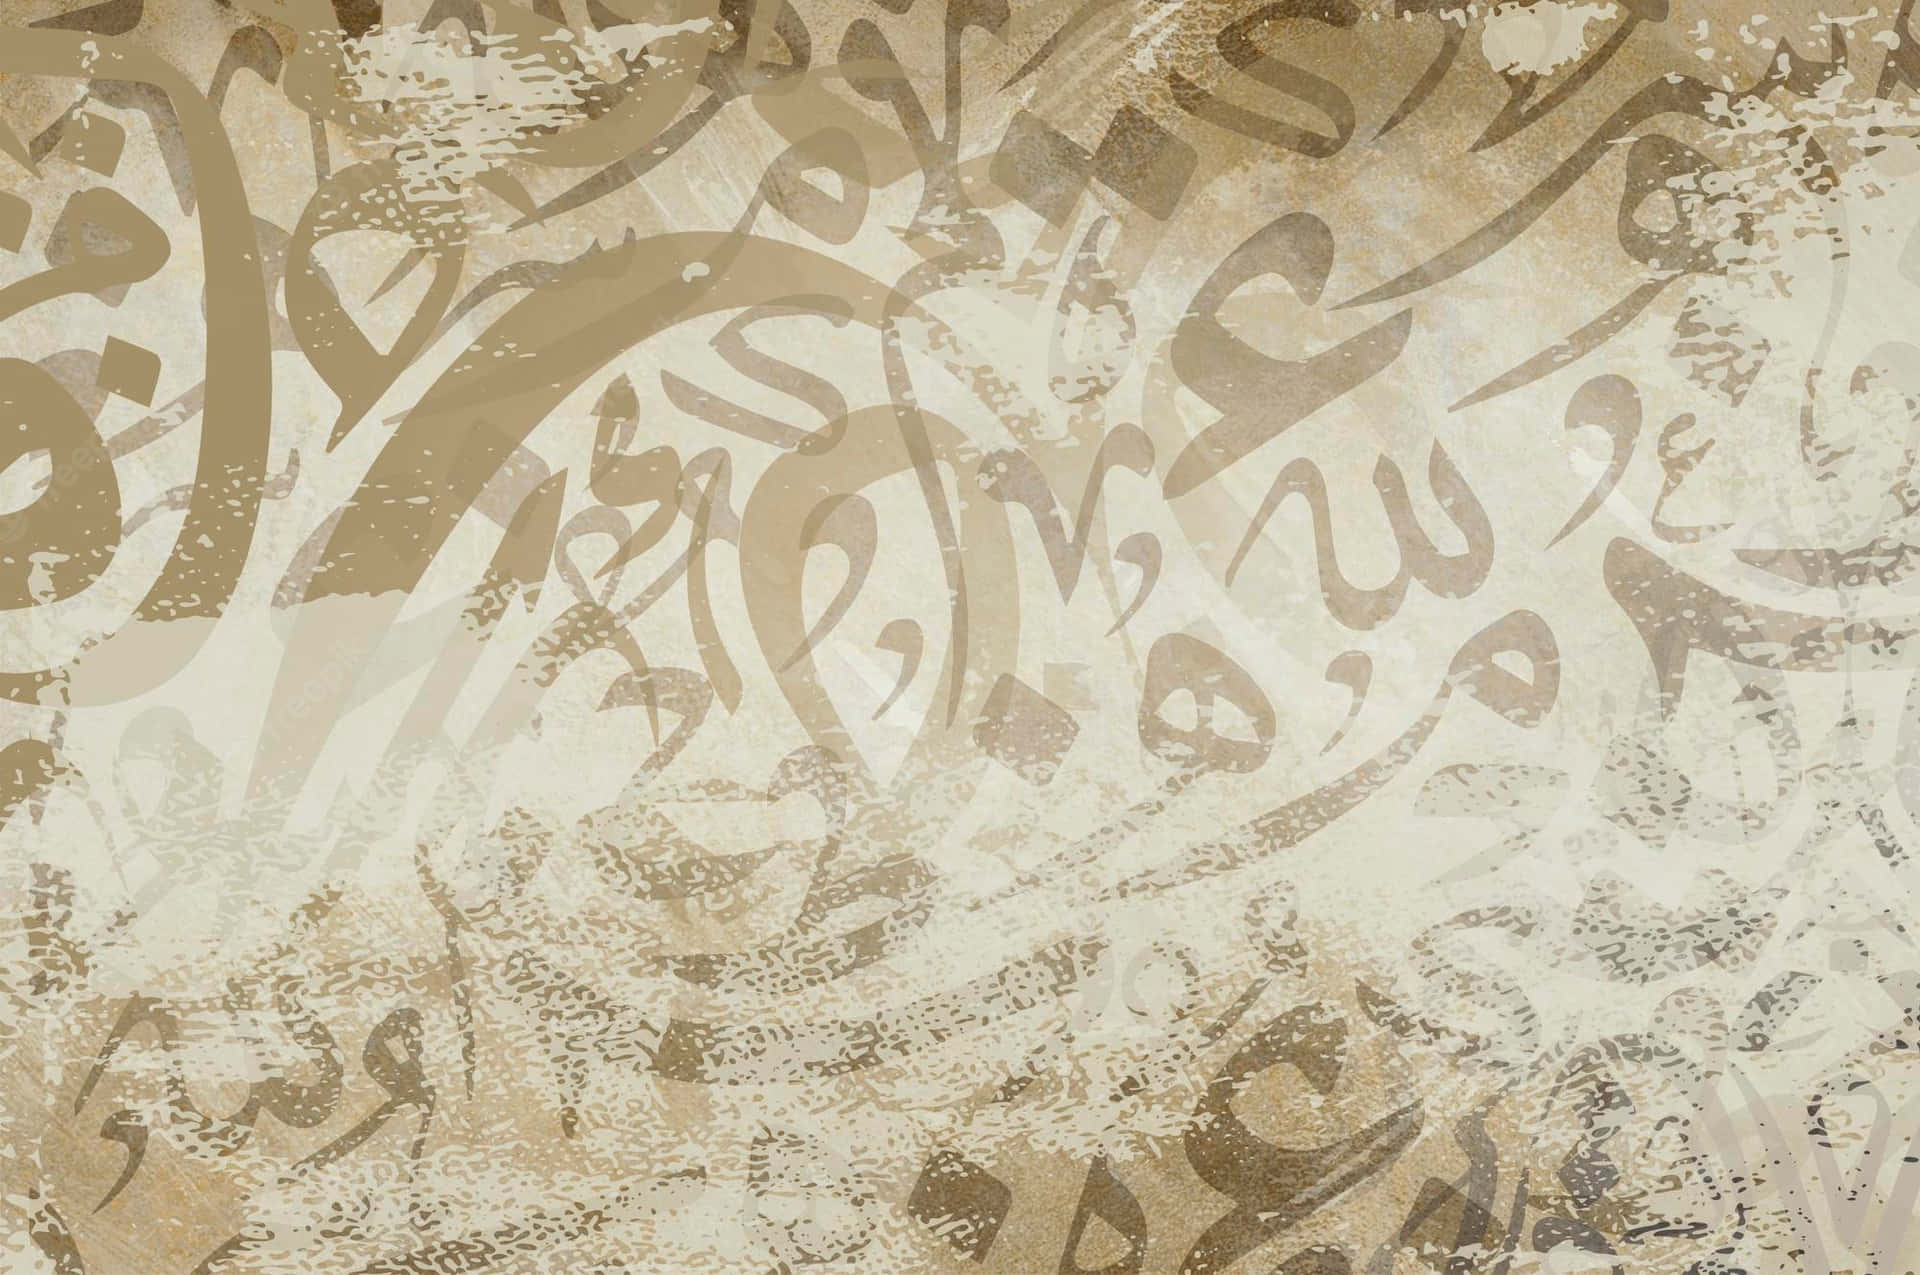 Einhintergrund In Tan Und Braun Mit Arabischer Kalligraphie. Wallpaper